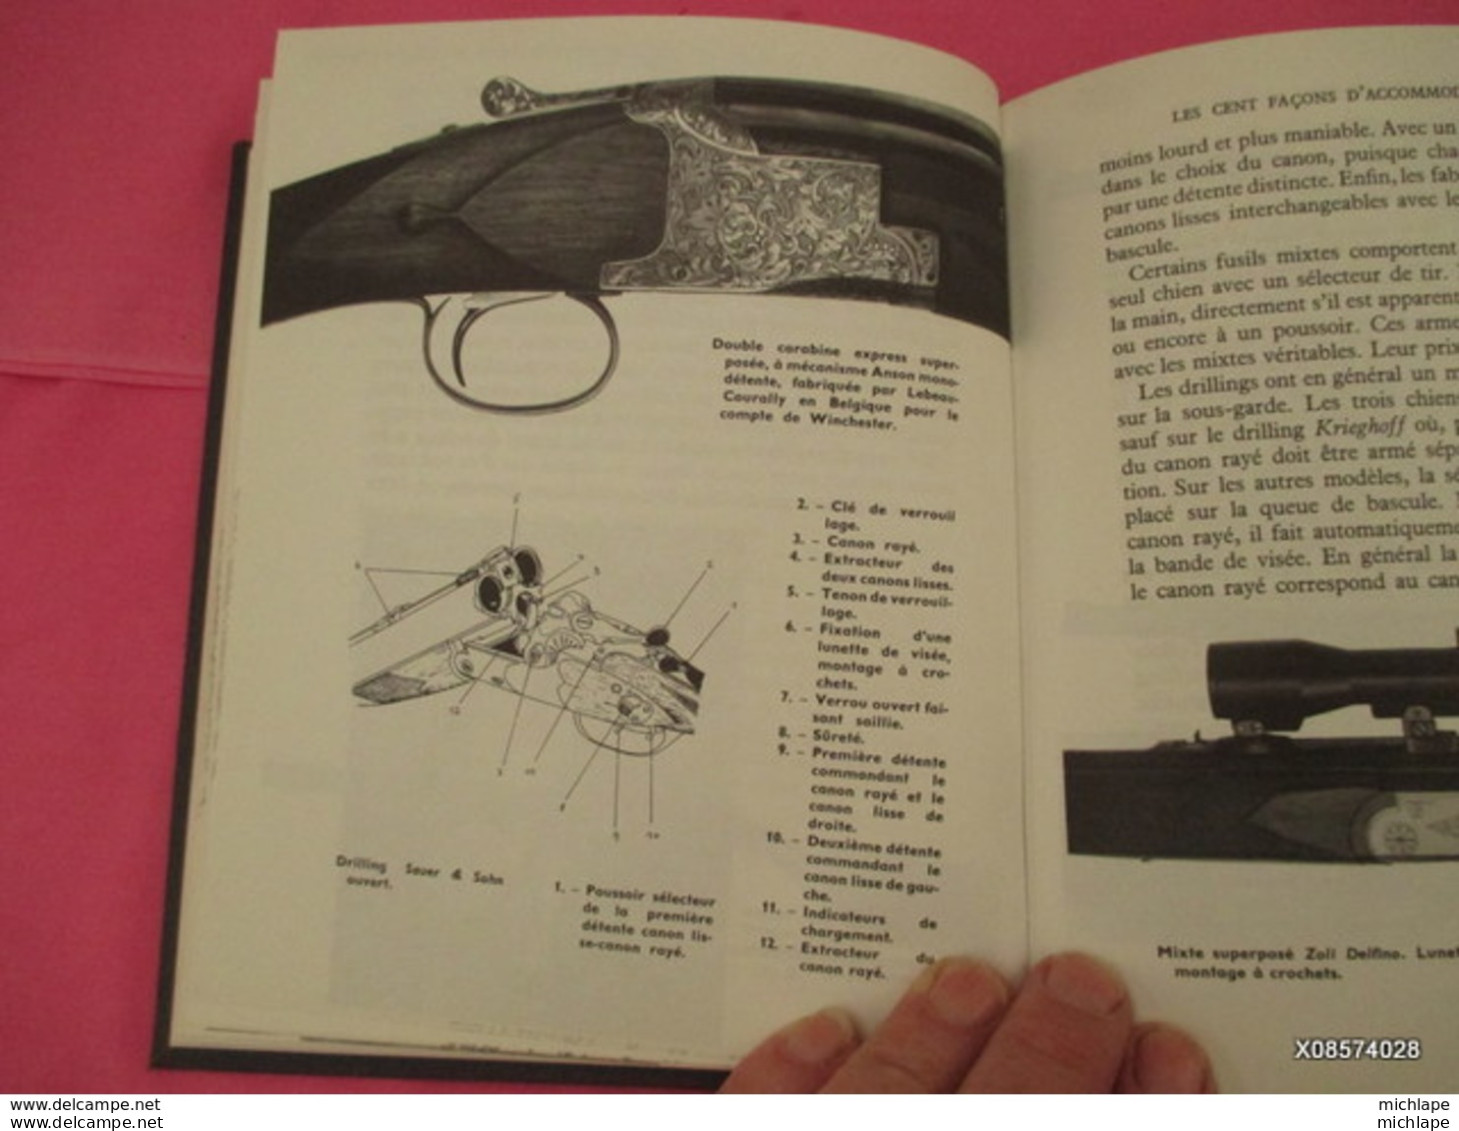 le livre des armes relié  D. VENNER  format 18 cm X 21  - 310  pages - 1973- tres bon état proche du neuf